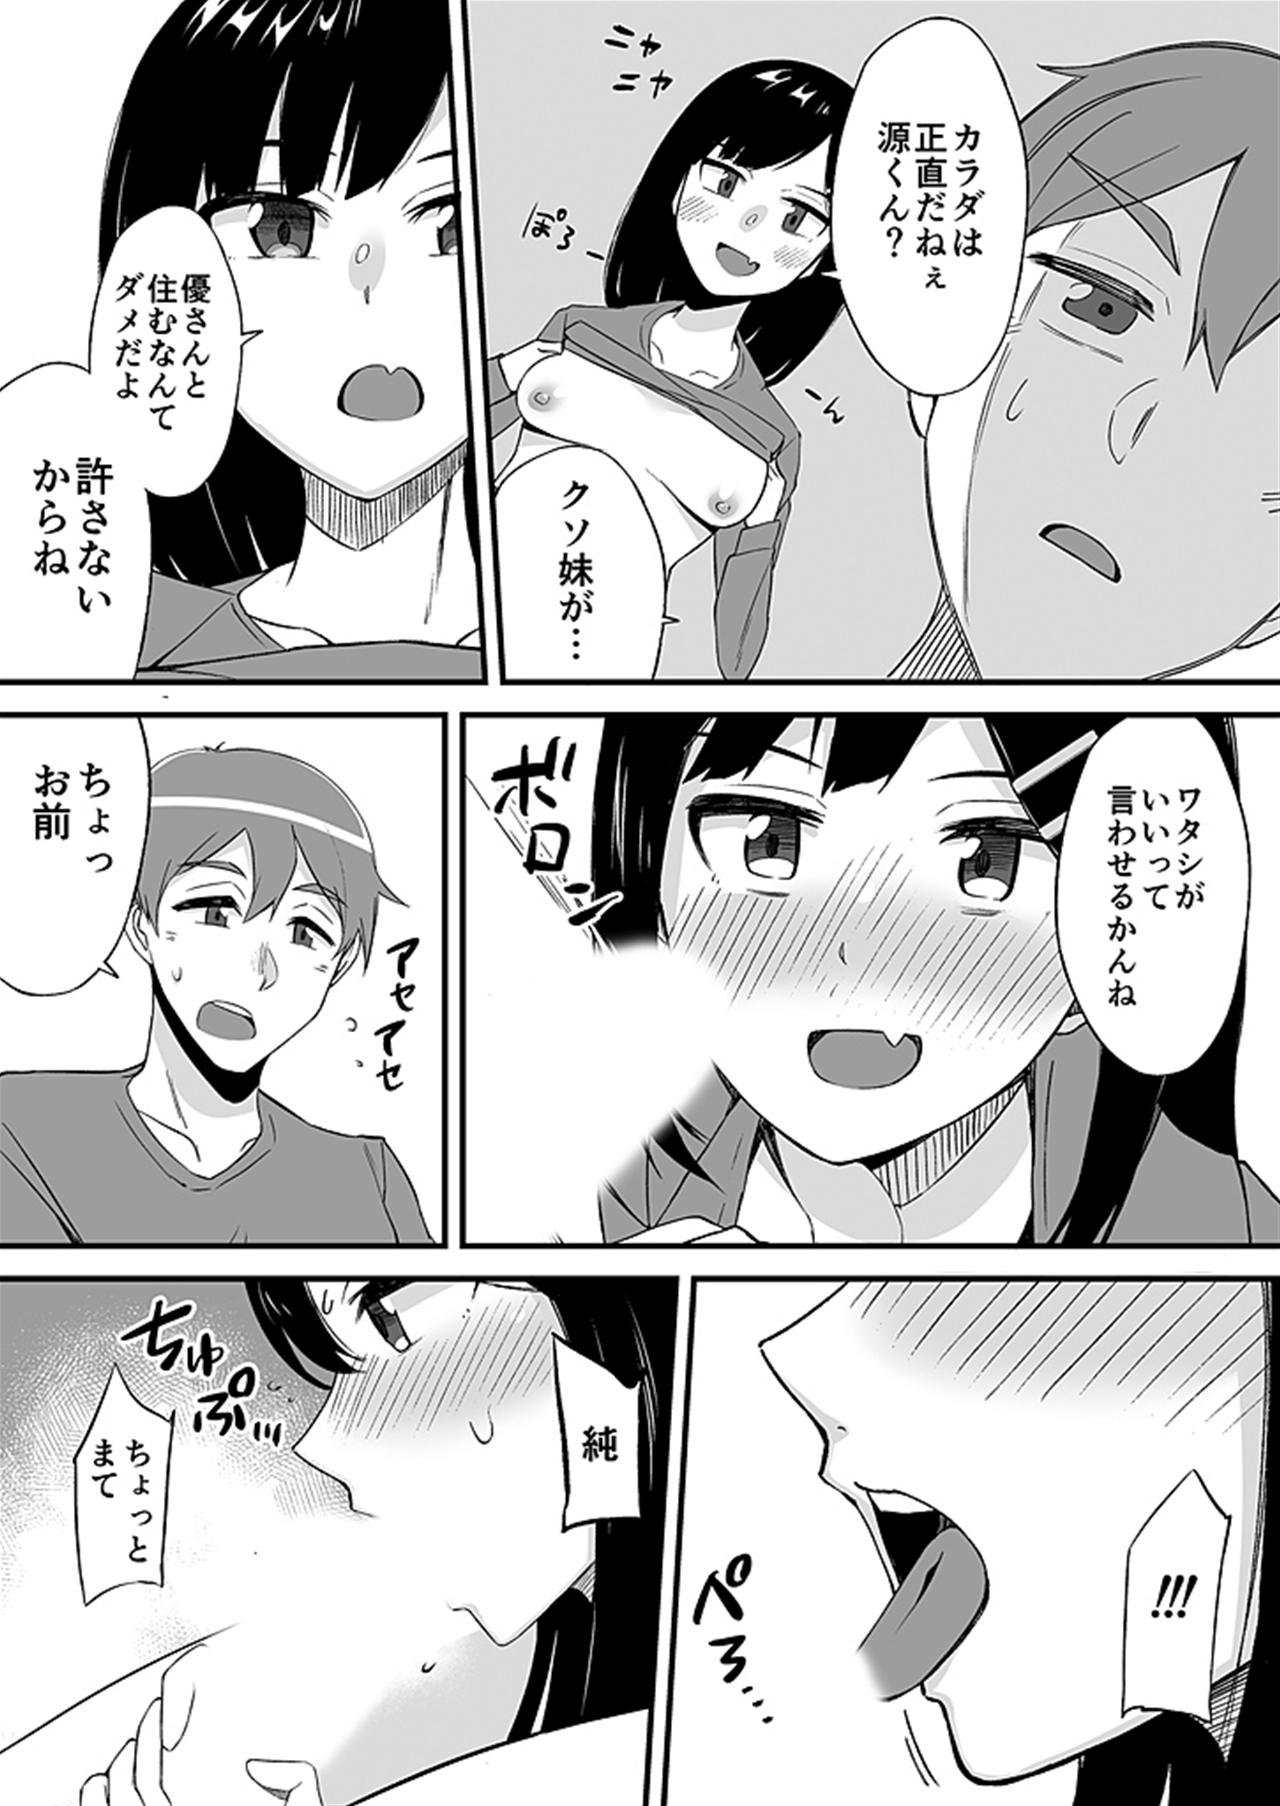 Fist "Imouto no Karada no Kanojo" to "Kanojo no Karada no Imouto", Docchi no Naka ga Kimochi Ii? 2 - Original Abg - Page 11